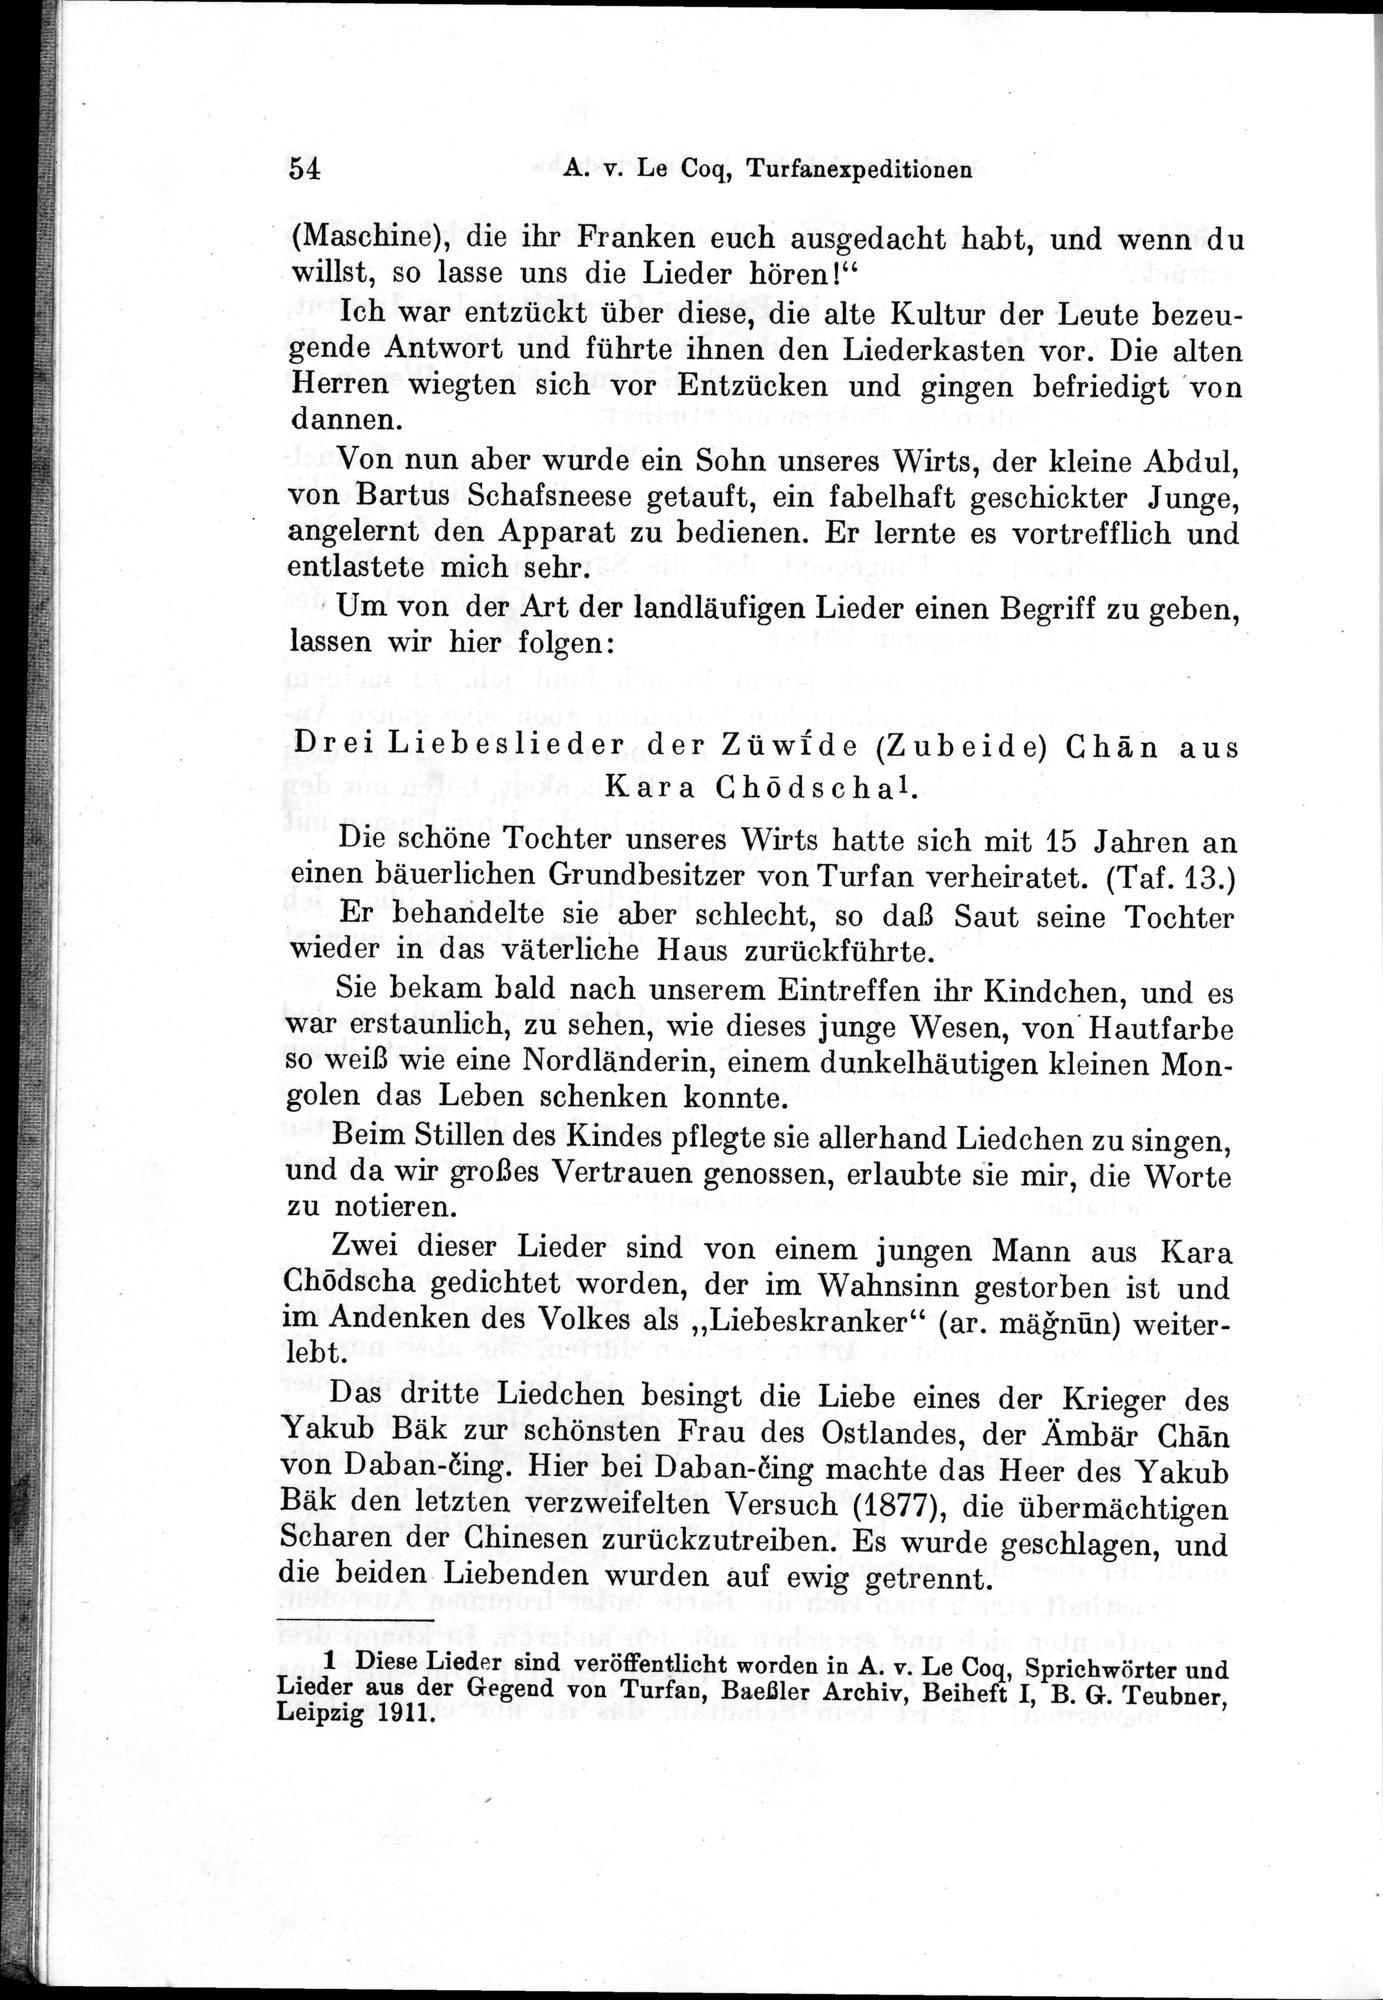 Auf Hellas Spuren in Ostturkistan : vol.1 / Page 82 (Grayscale High Resolution Image)